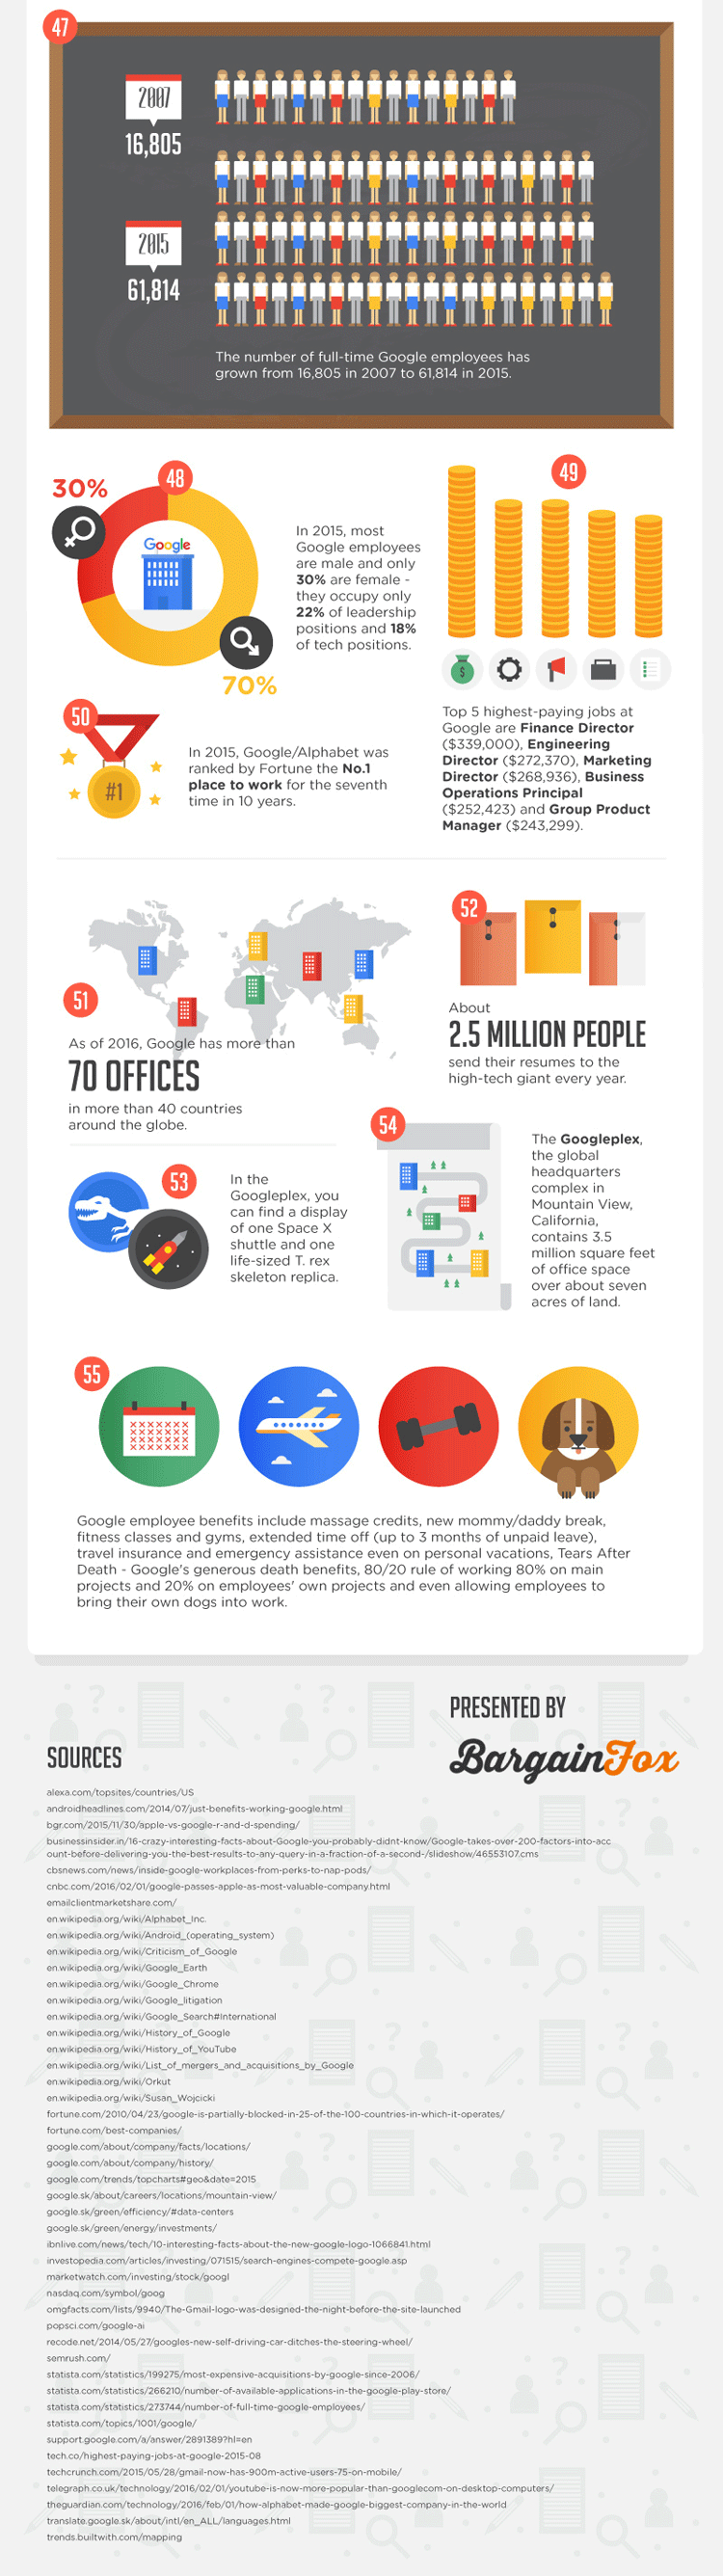 55 interessante Fakten über Google – Teil 5